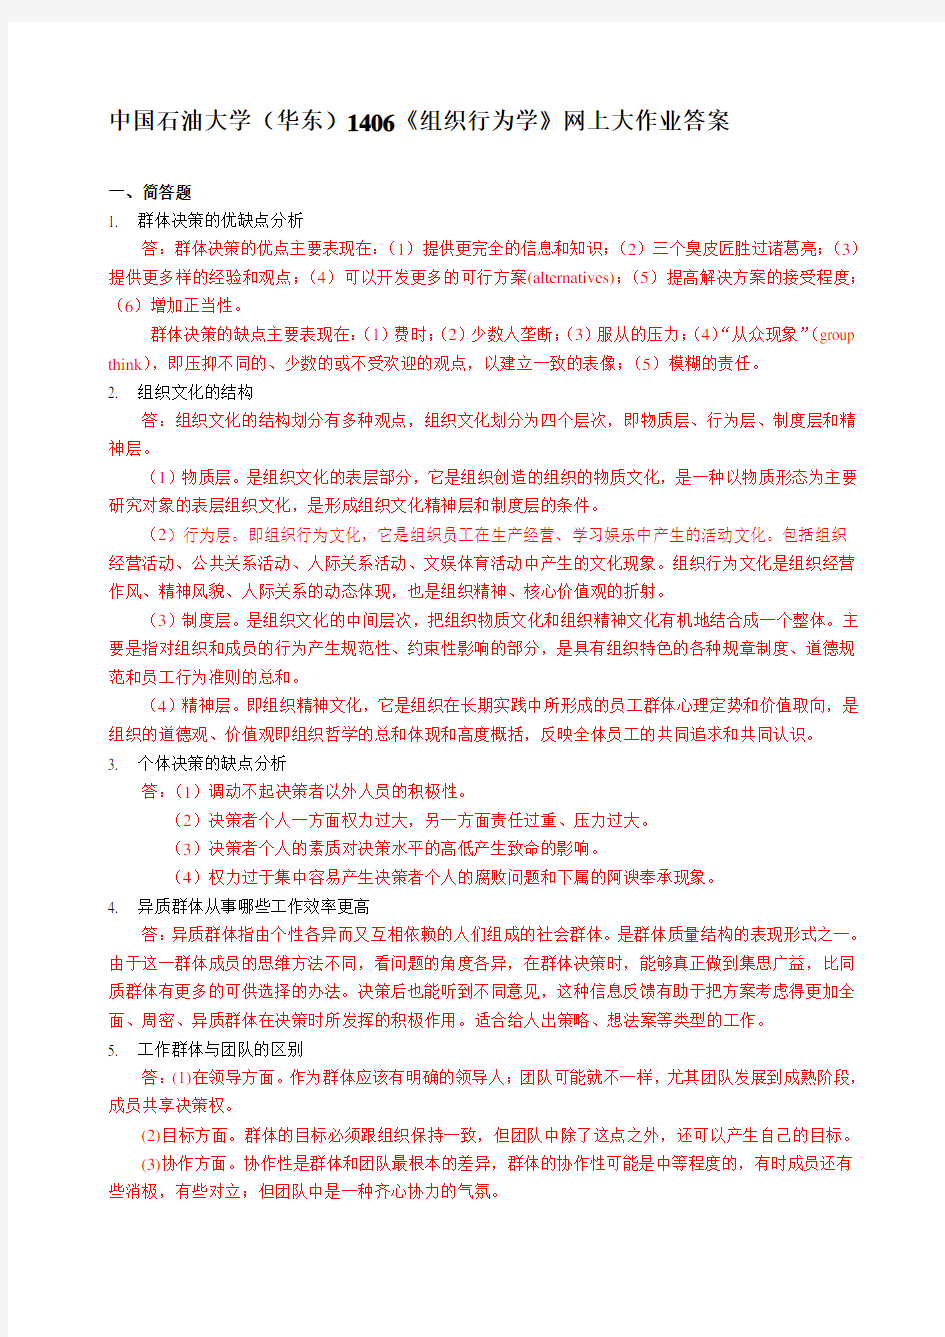 中国石油大学(华东)1406《组织行为学》网上大作业